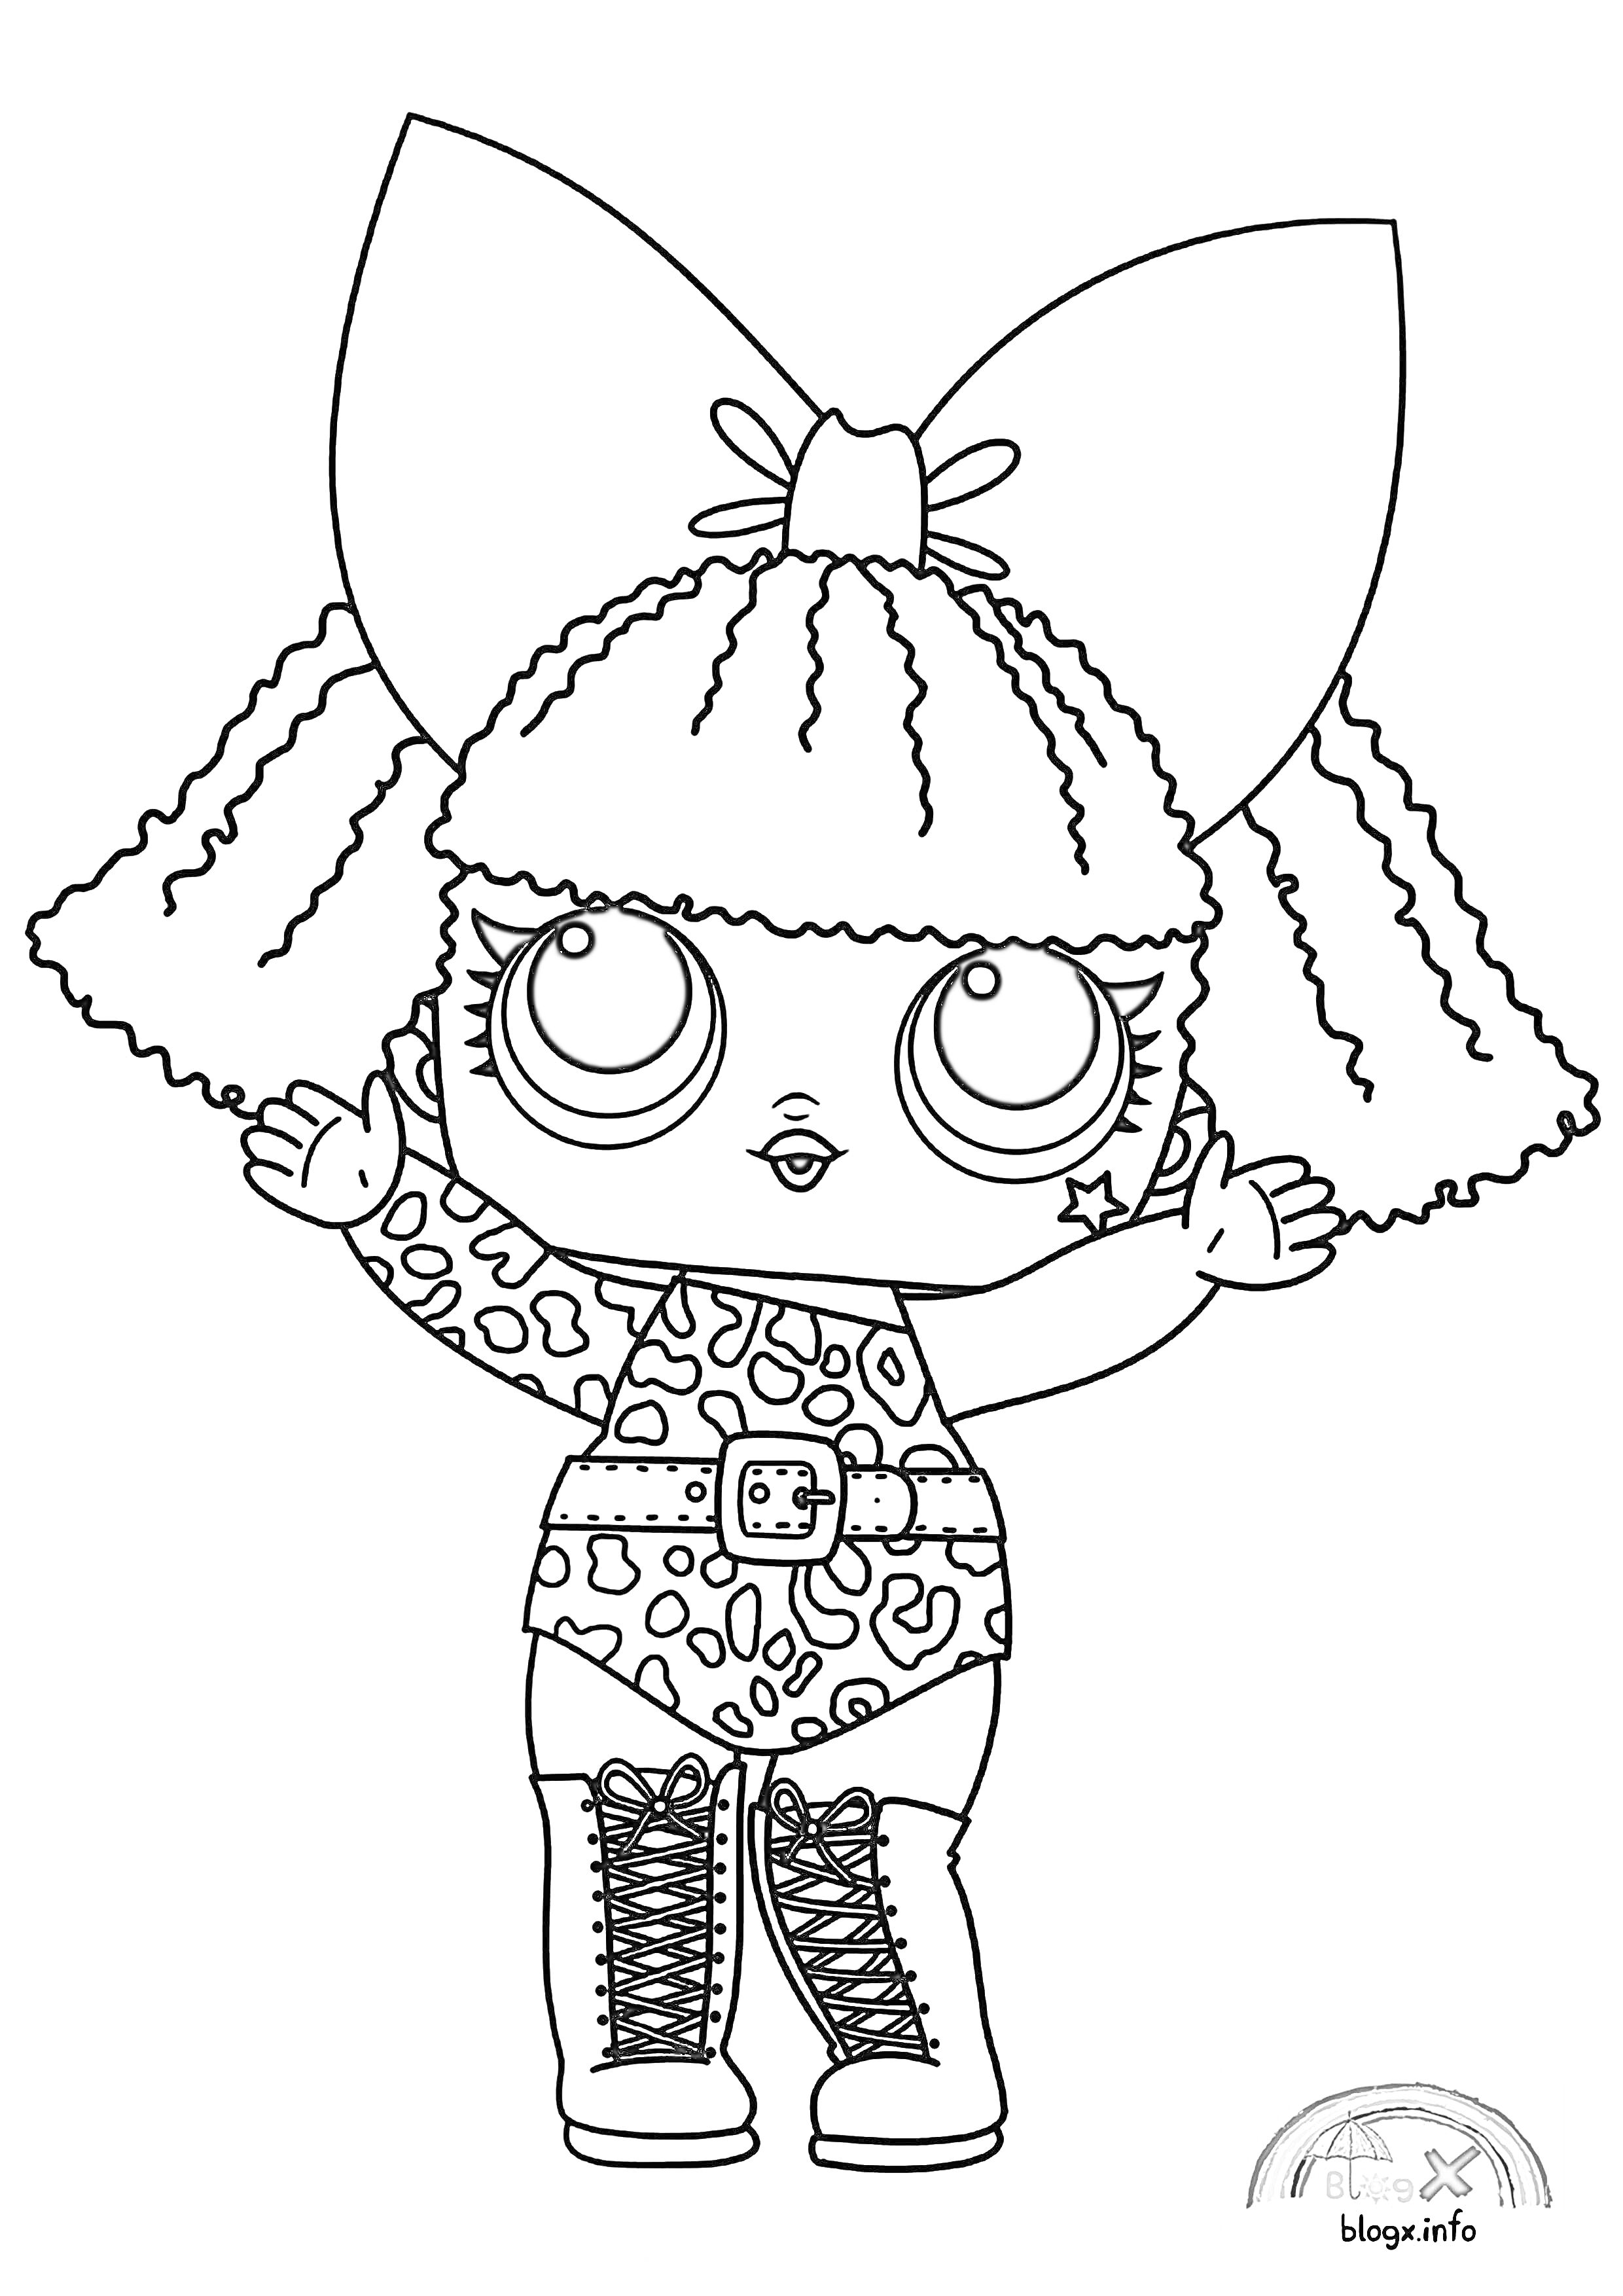 Раскраска кукла лол с бантом на голове, наряд с зебровым принтом, ботинки на шнуровке